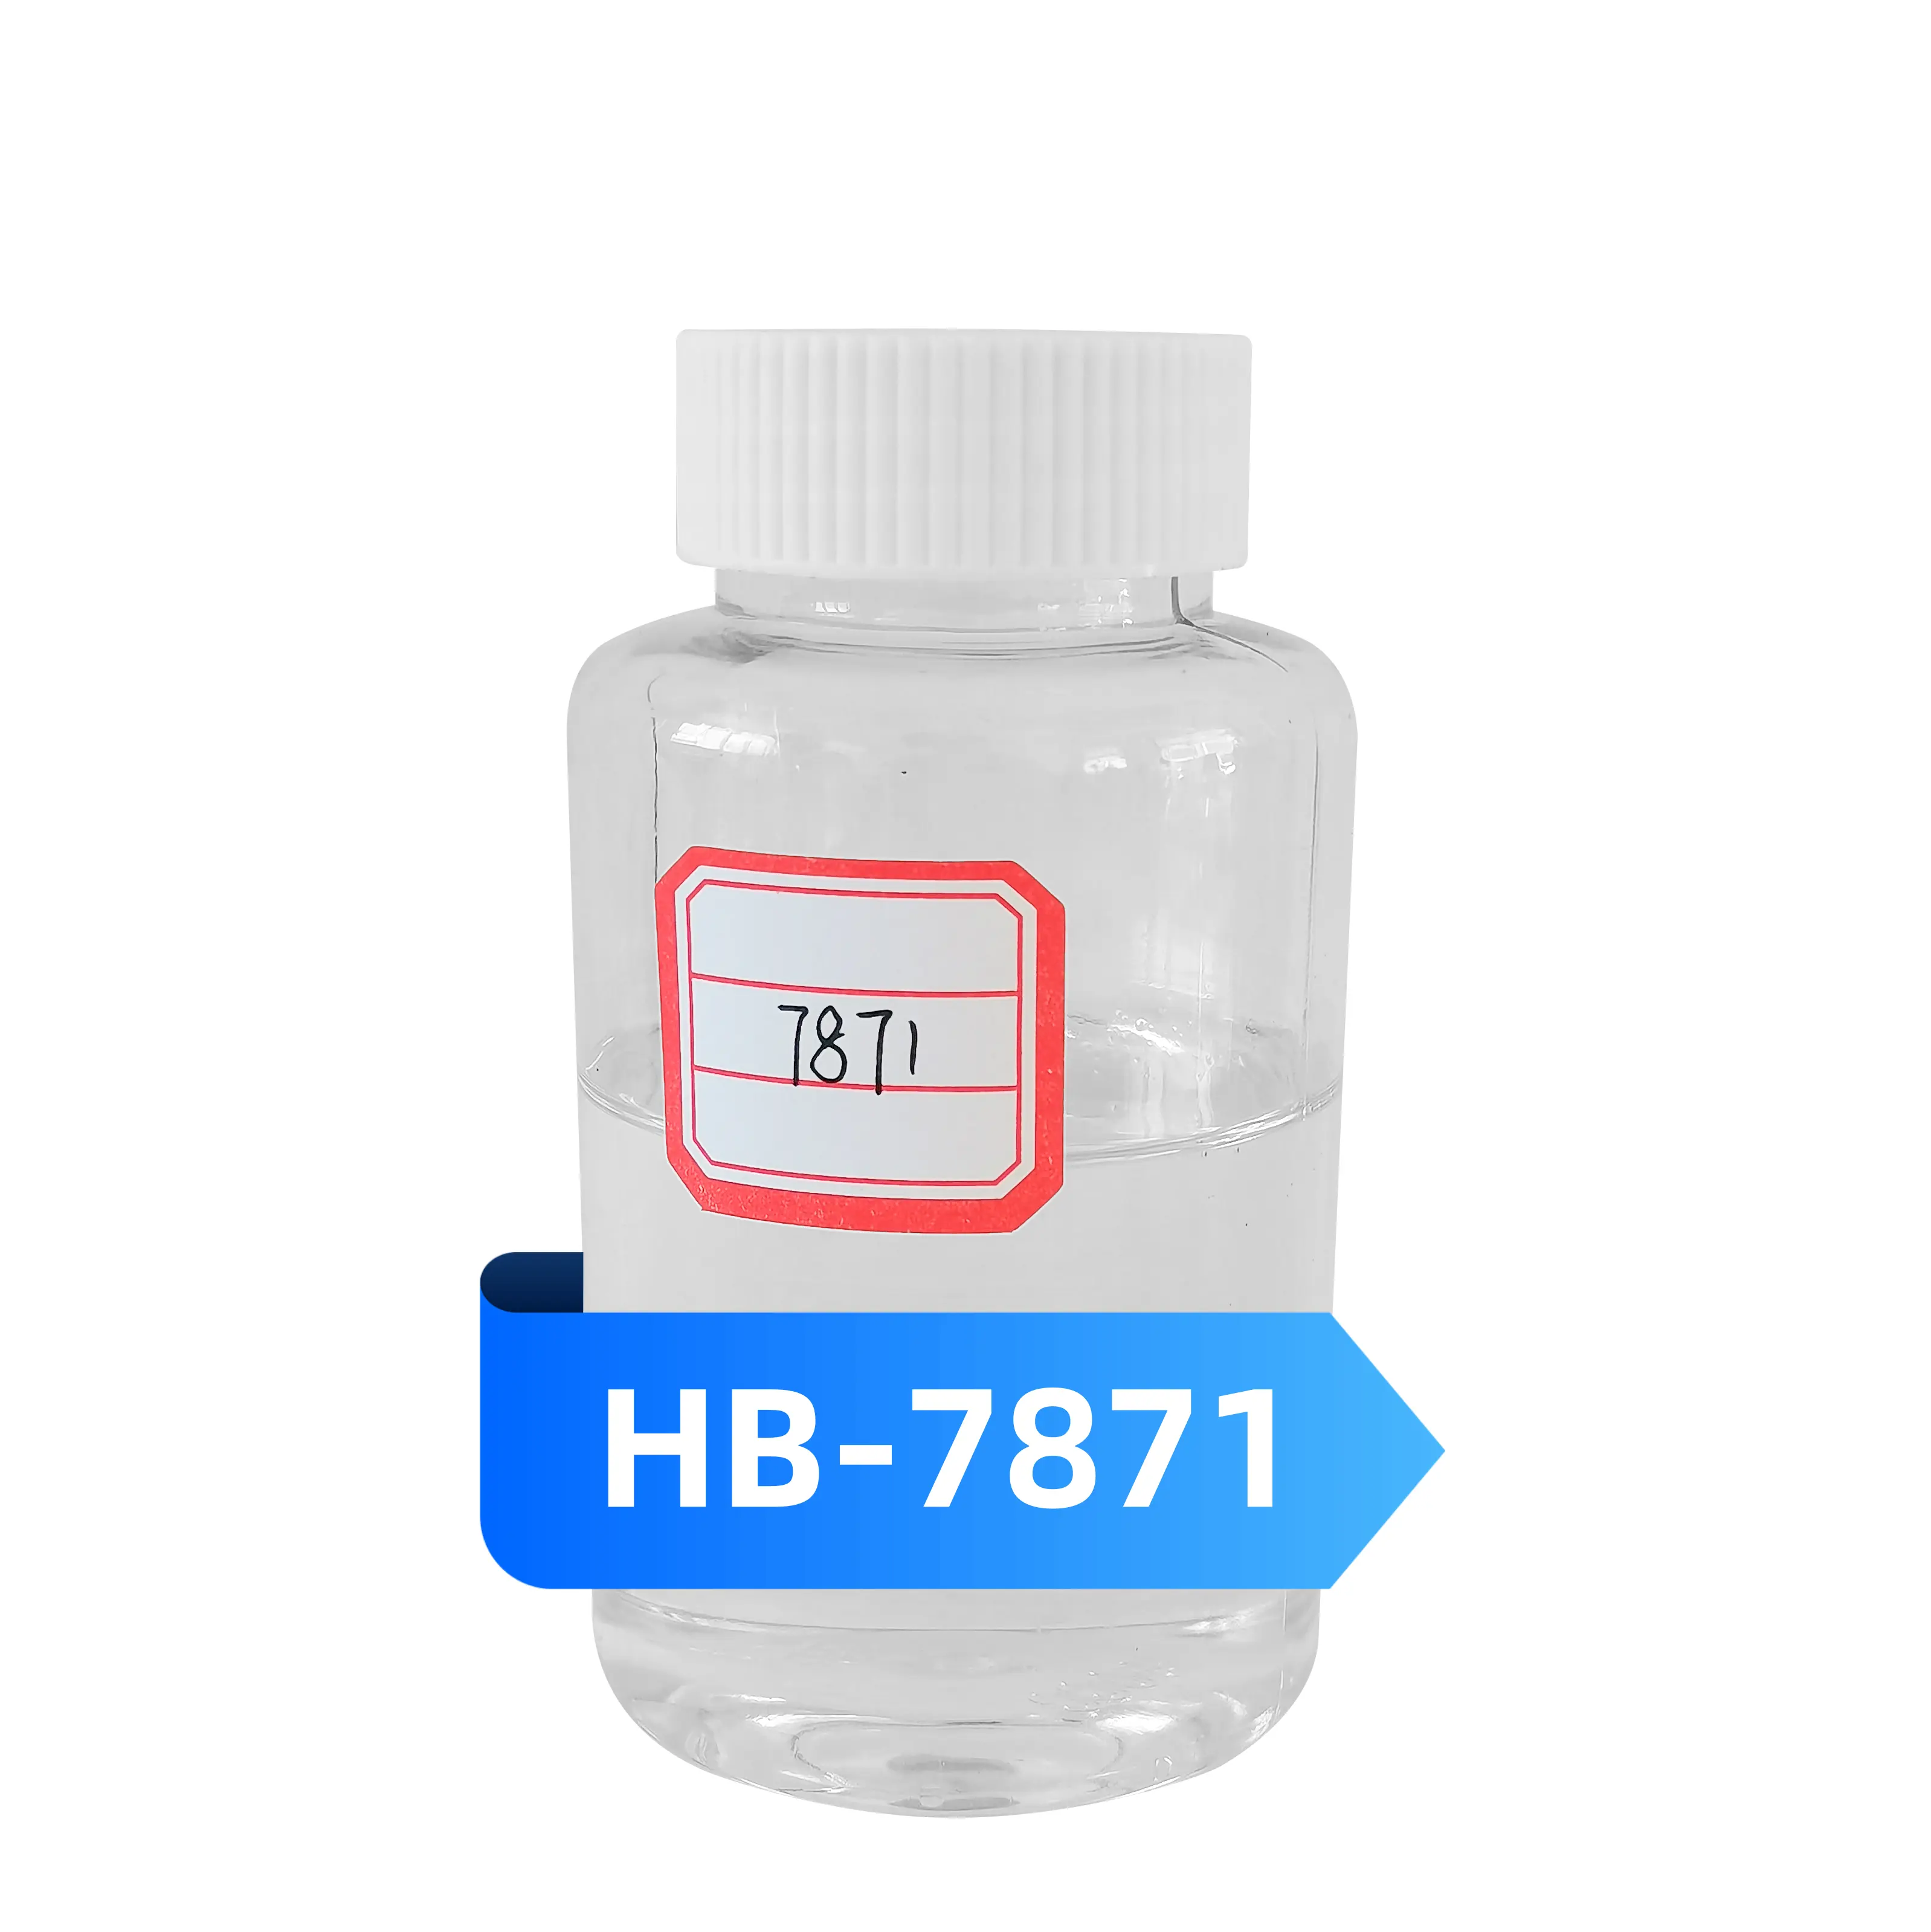 Korozyon önleyici kaplamalar için doğrudan üretici yüksek kaliteli şeffaf sıvı kür maddesi HB-7871